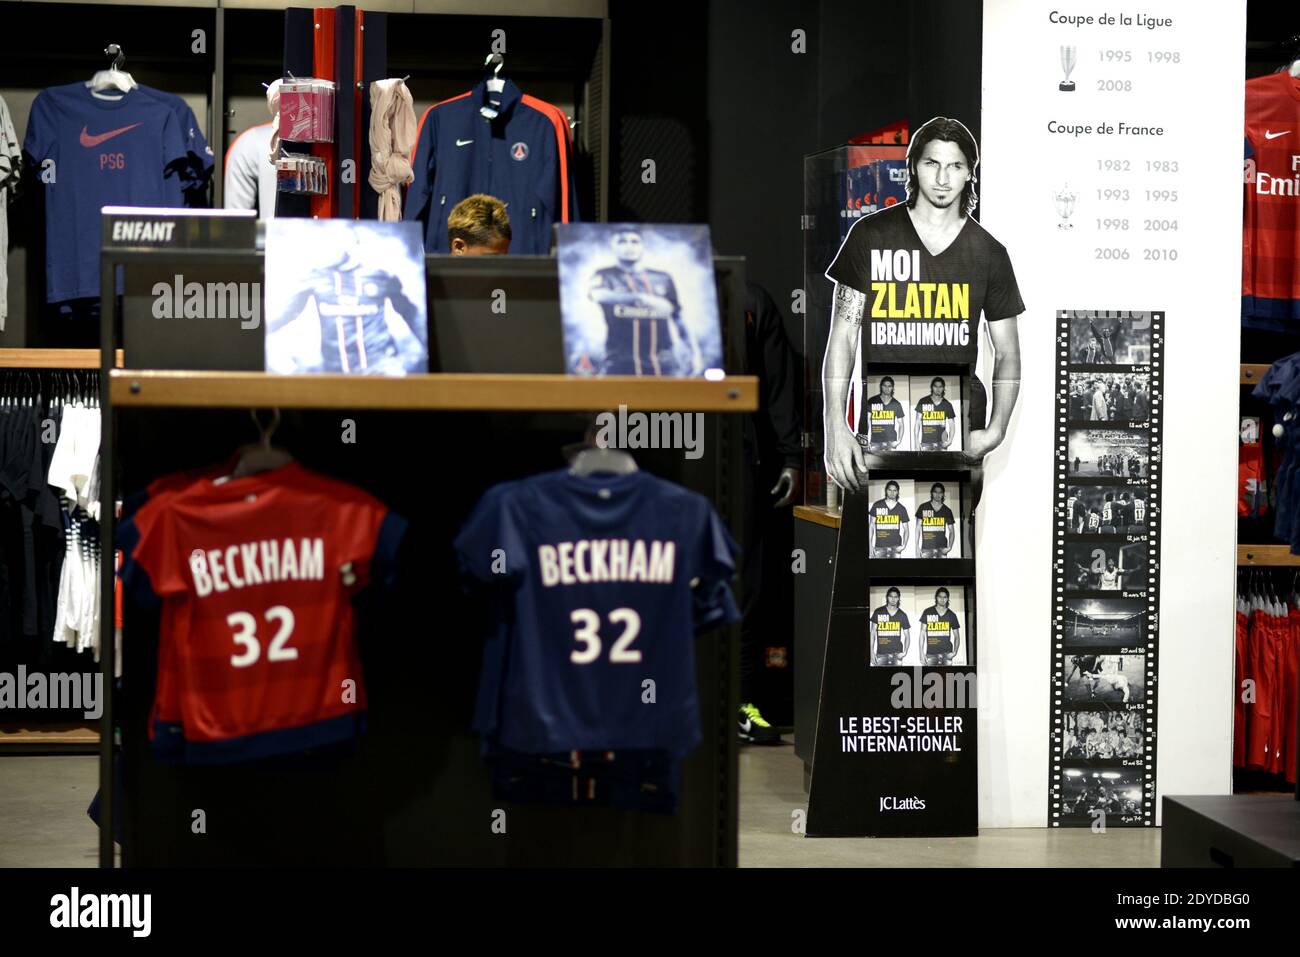 Las camisetas David Beckham del PSG ya están a la venta en la boutique Paris  Saint-Germain en los Campos Elíseos en París, Francia, el 31 de enero de  2013. Beckham firmó un